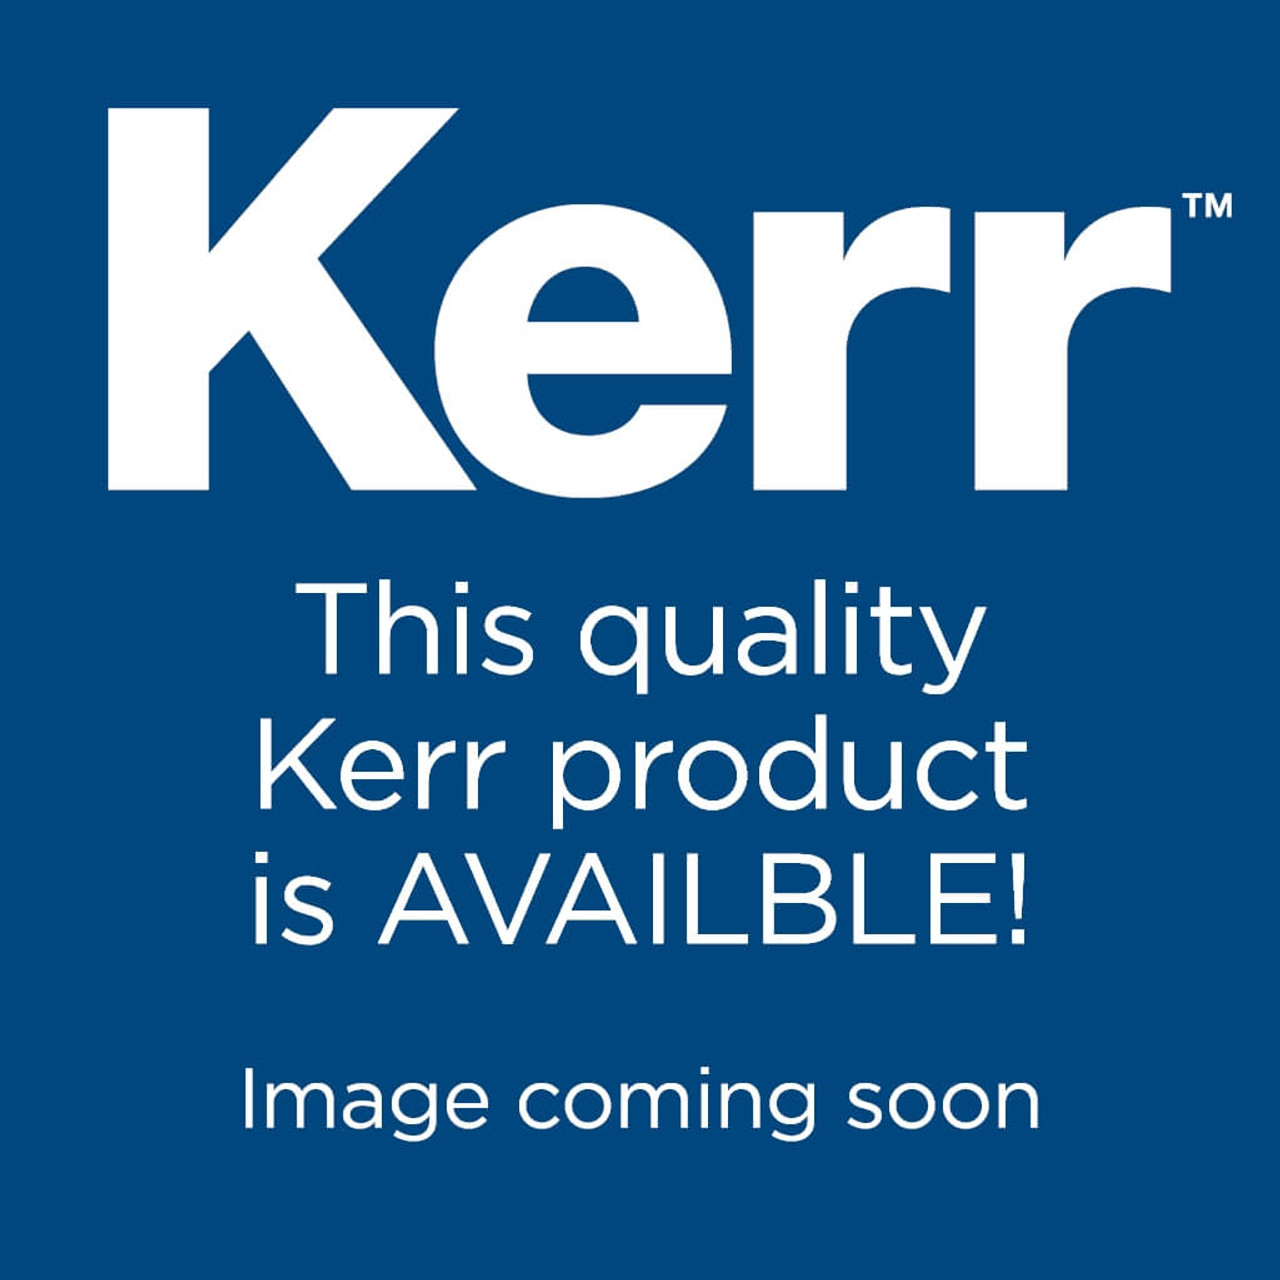 Autofit Backfill Gutta Percha - Size F, 972-0020, Kerr Dental